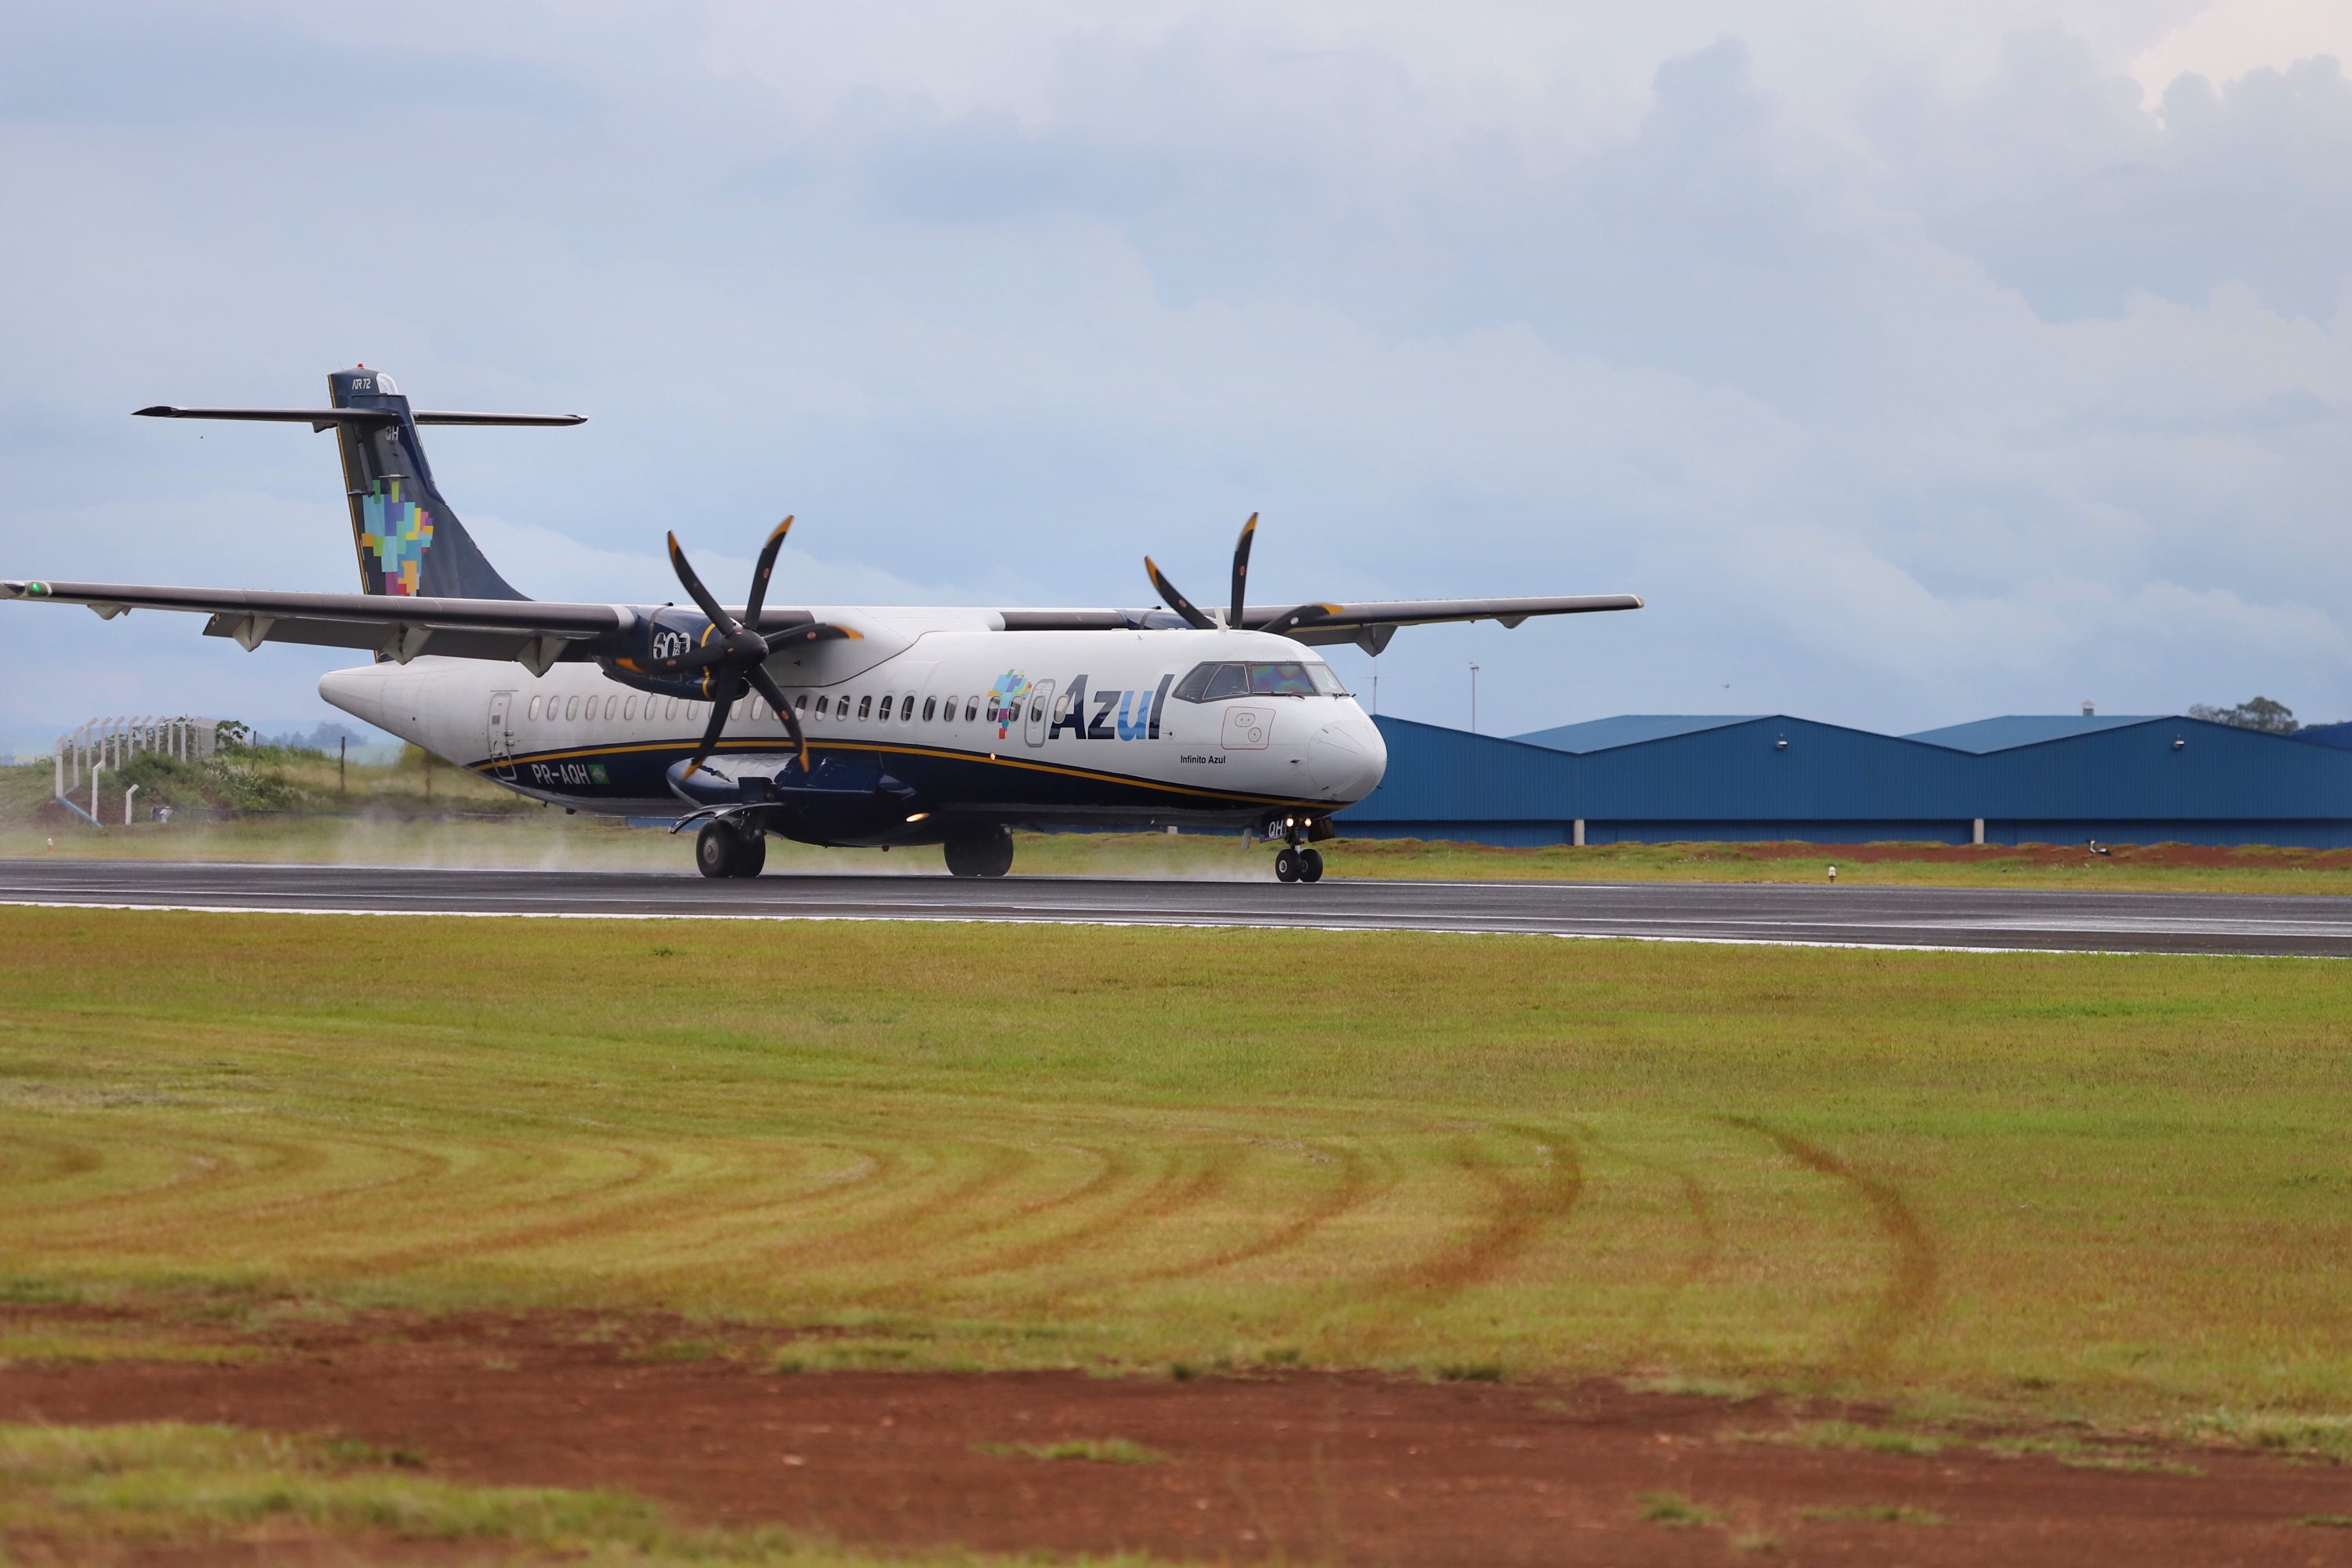  Foz do Iguaçu ganhará novas conexões aéreas em dezembro